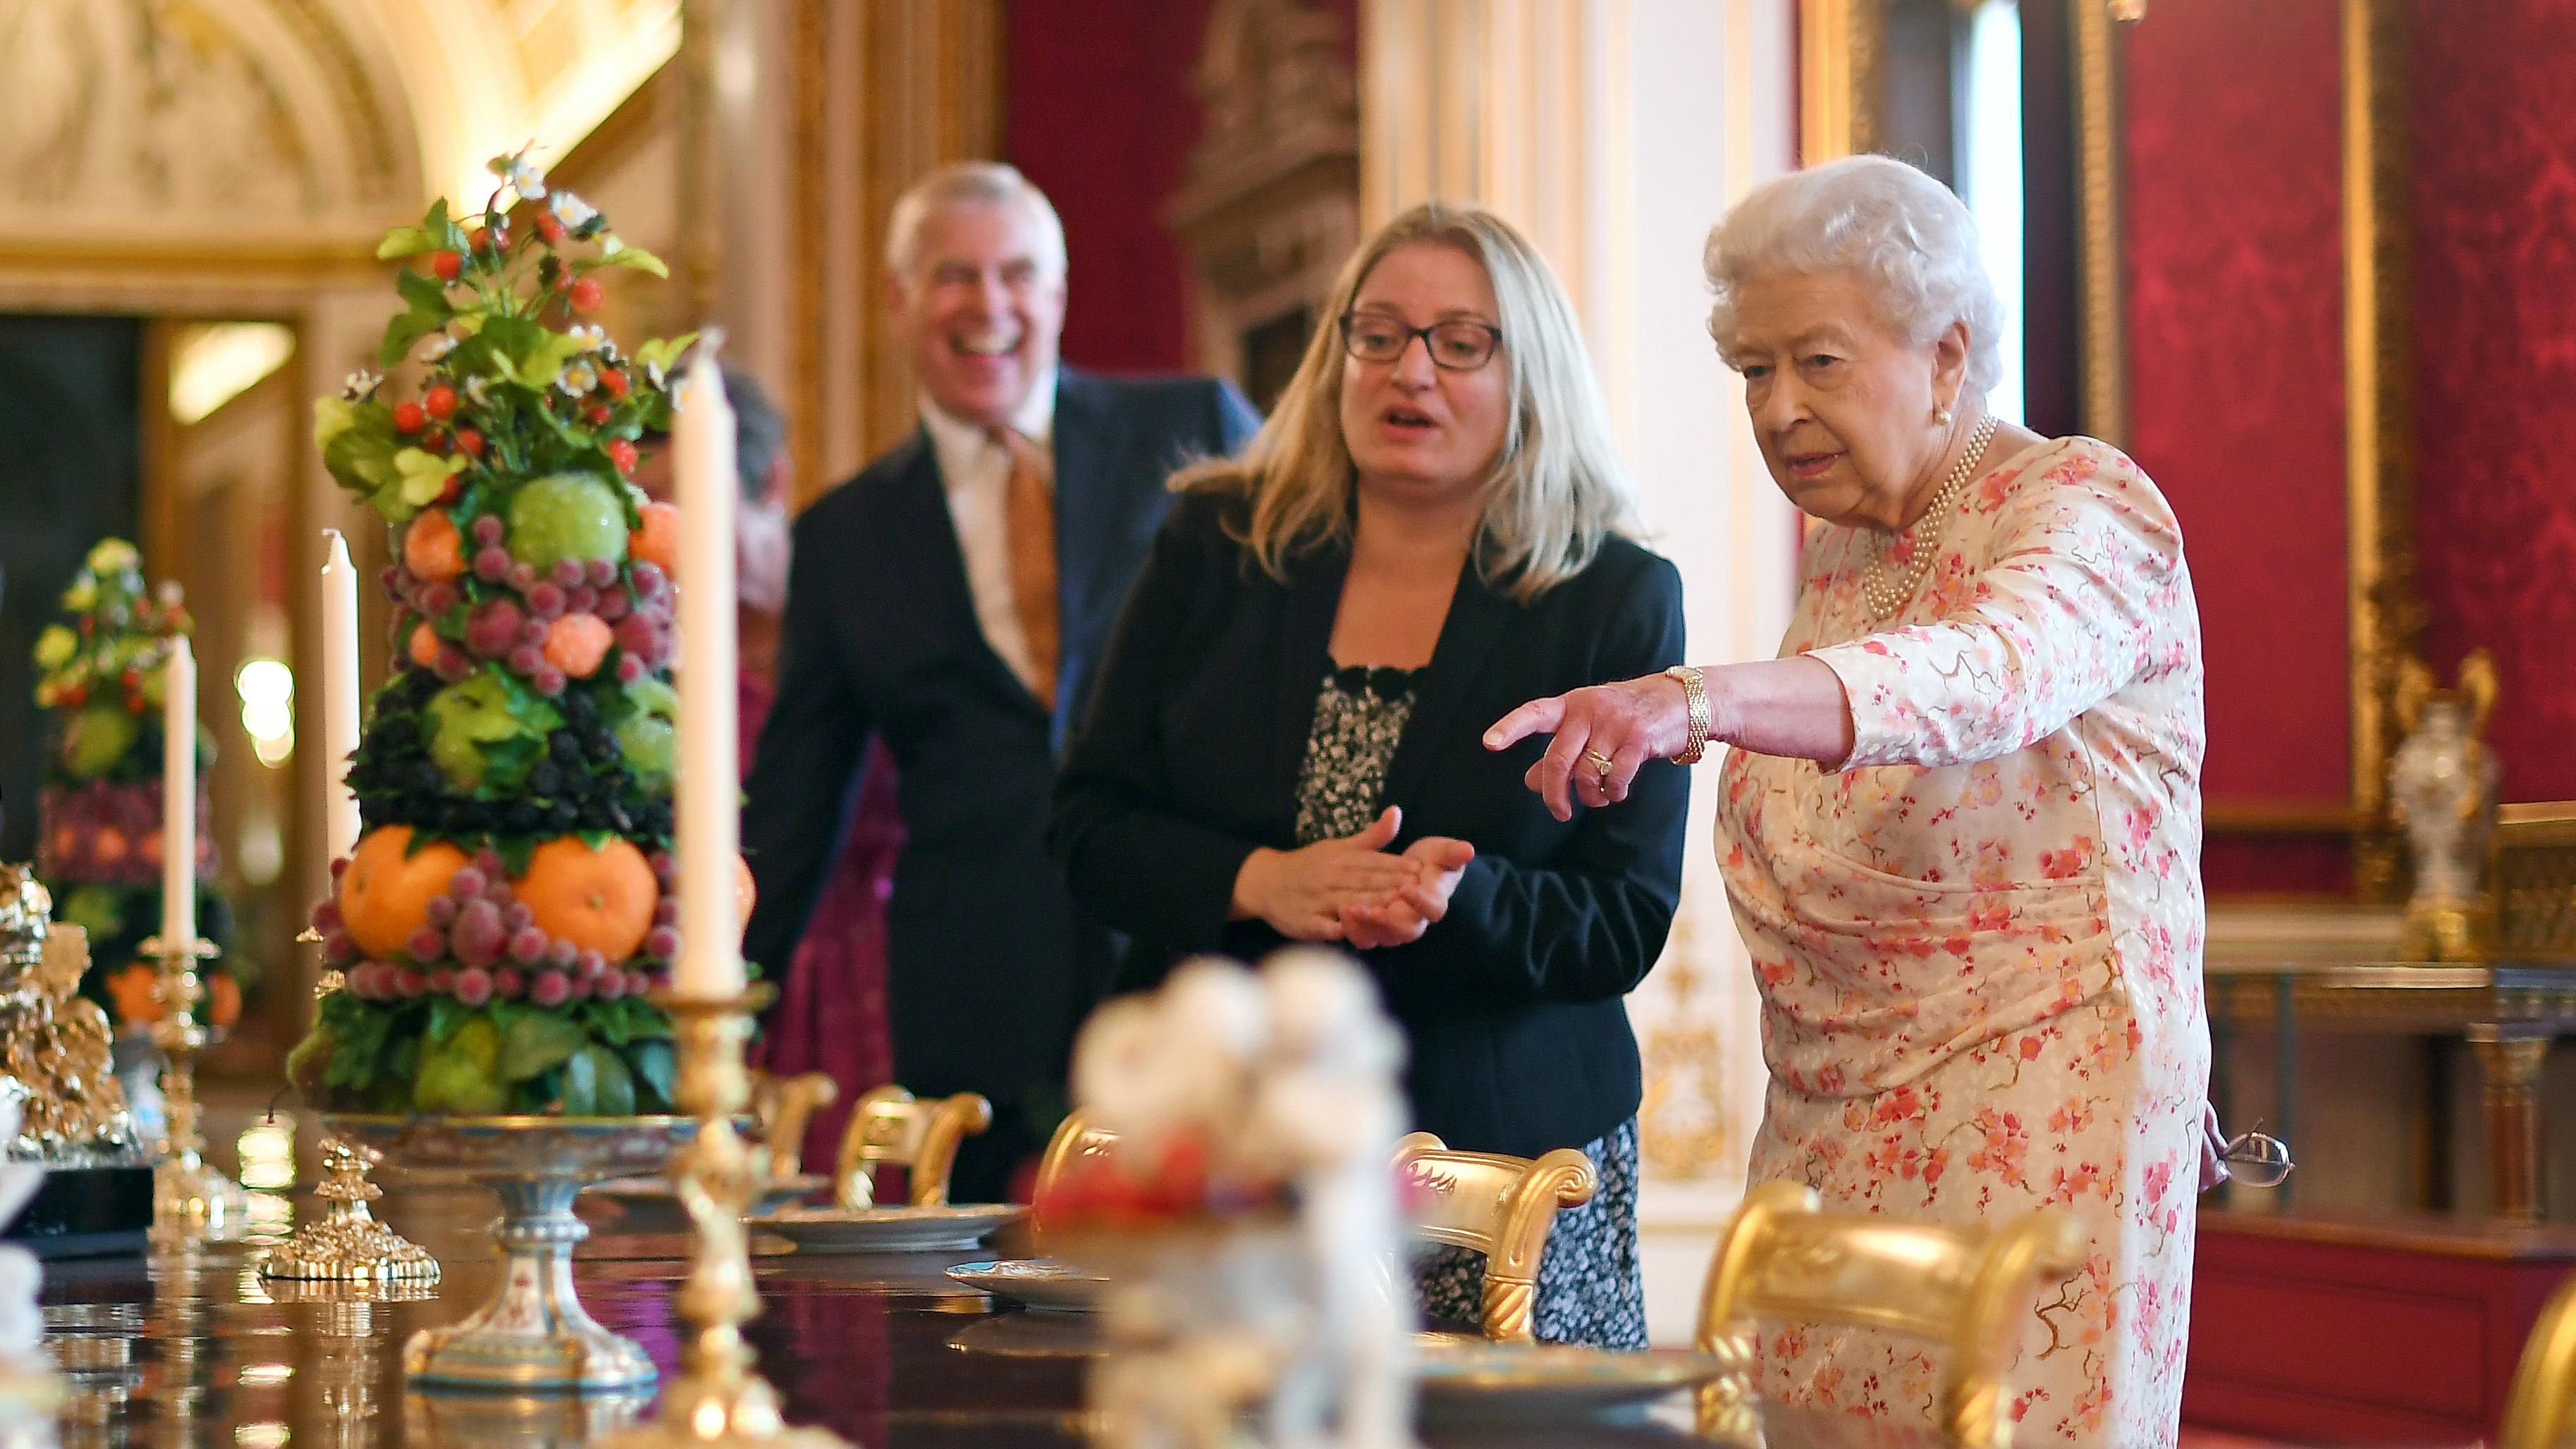 Єлизавета ІІ у квітковій сукні відкрила виставку: серед експонатів – шкатулка з дитячими зубами